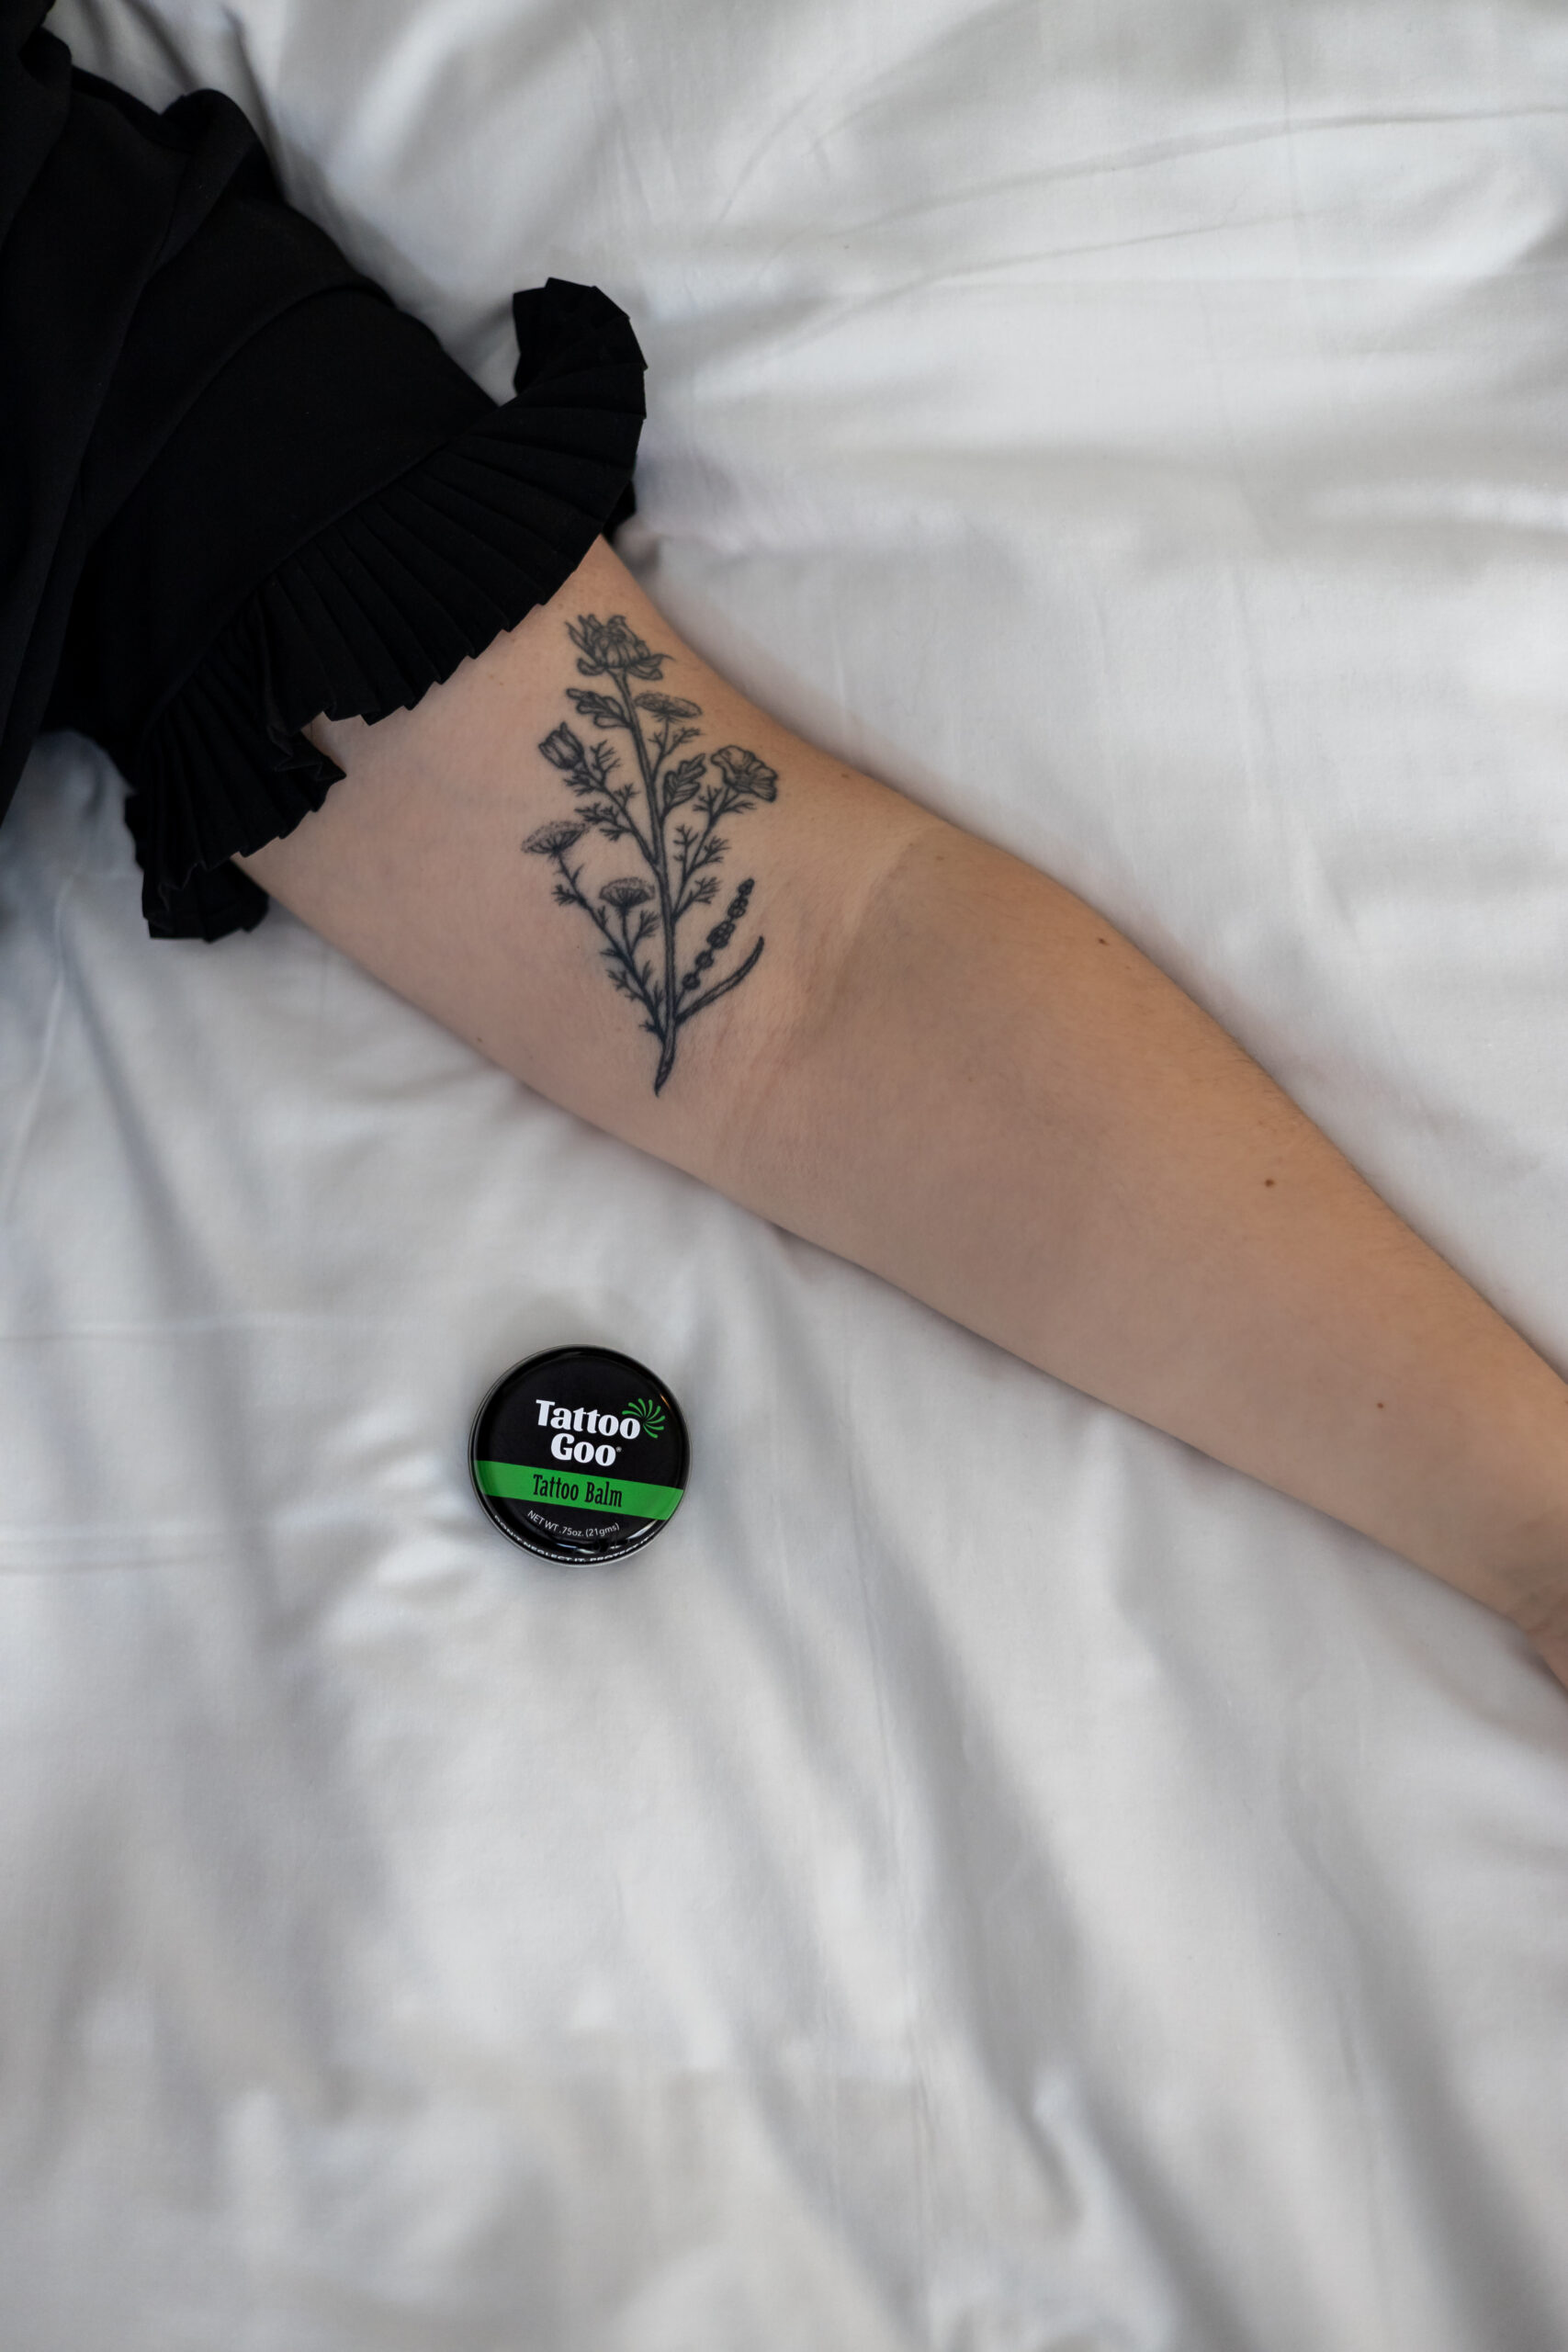 All-Natural Mini Tattoo Healing Balm - Tattoo Goo